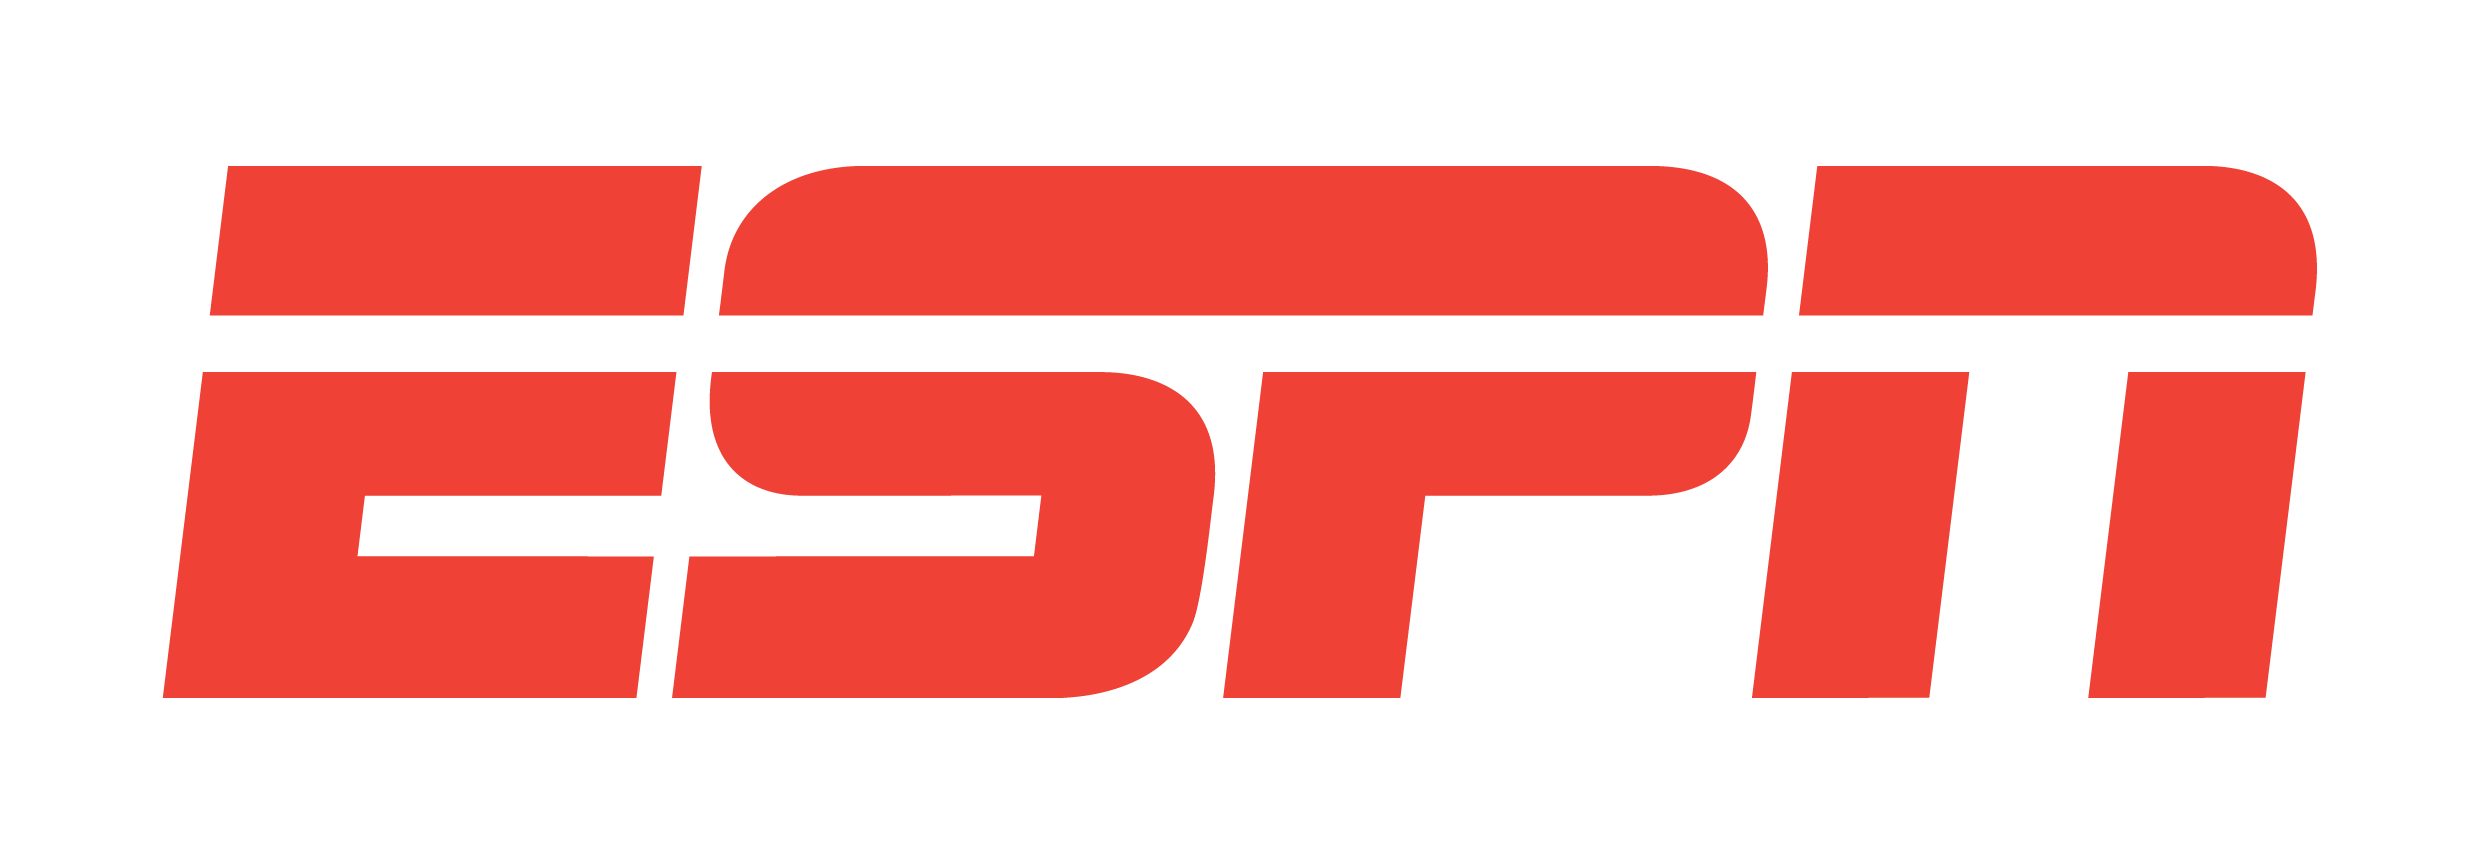 logo-foxsports-1